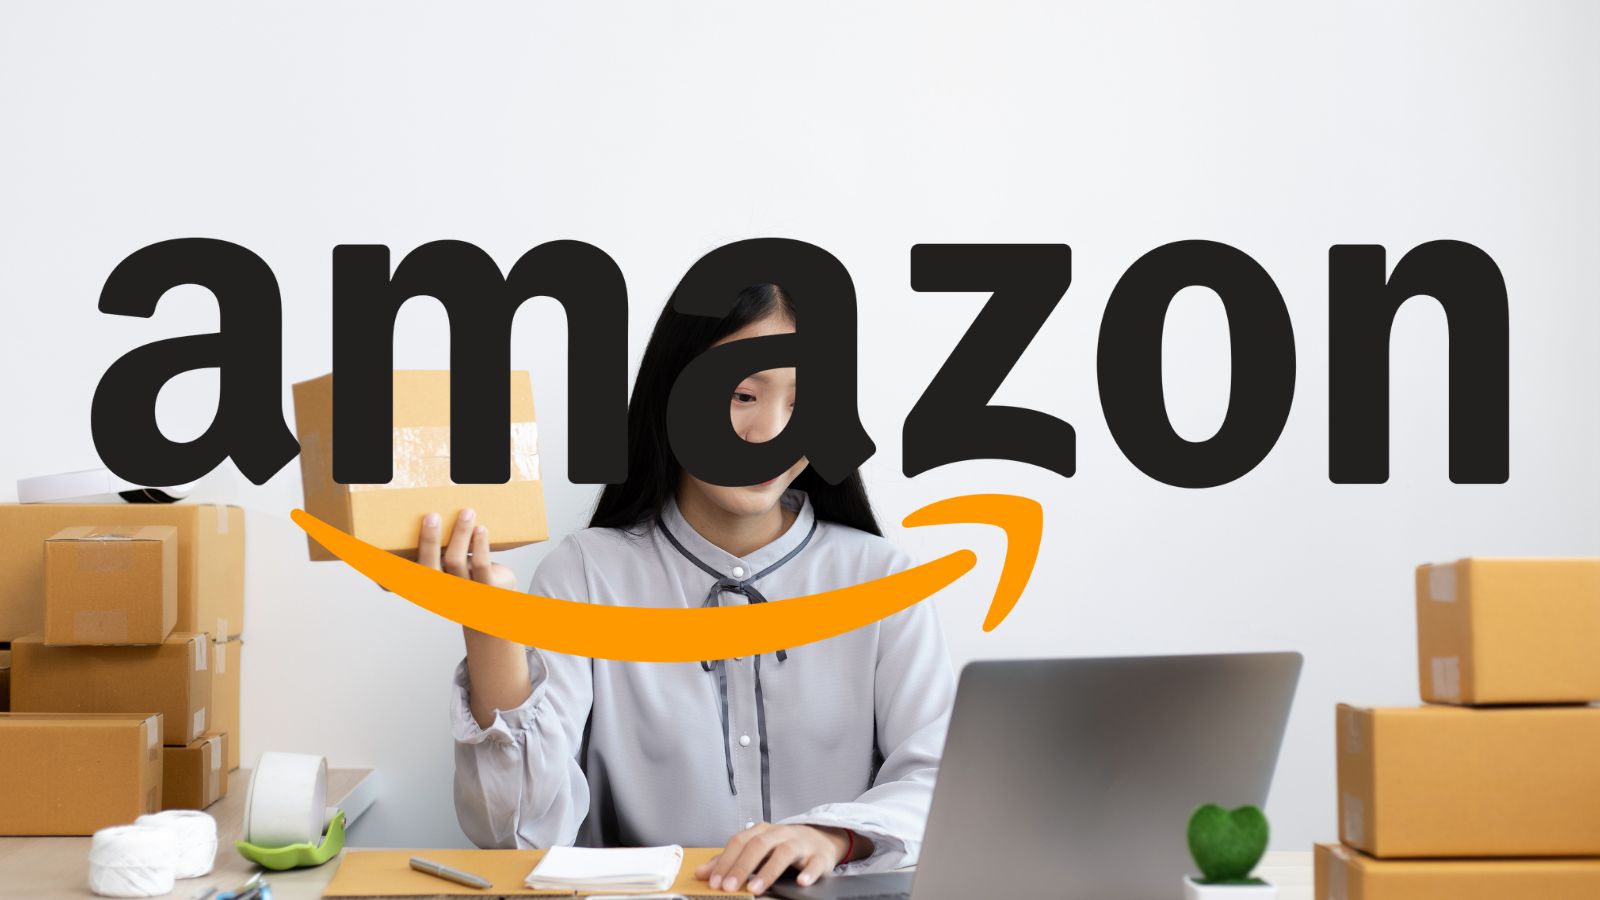 Amazon distrugge Unieuro: oggi GRATIS smartphone e grandi offerte al 90%